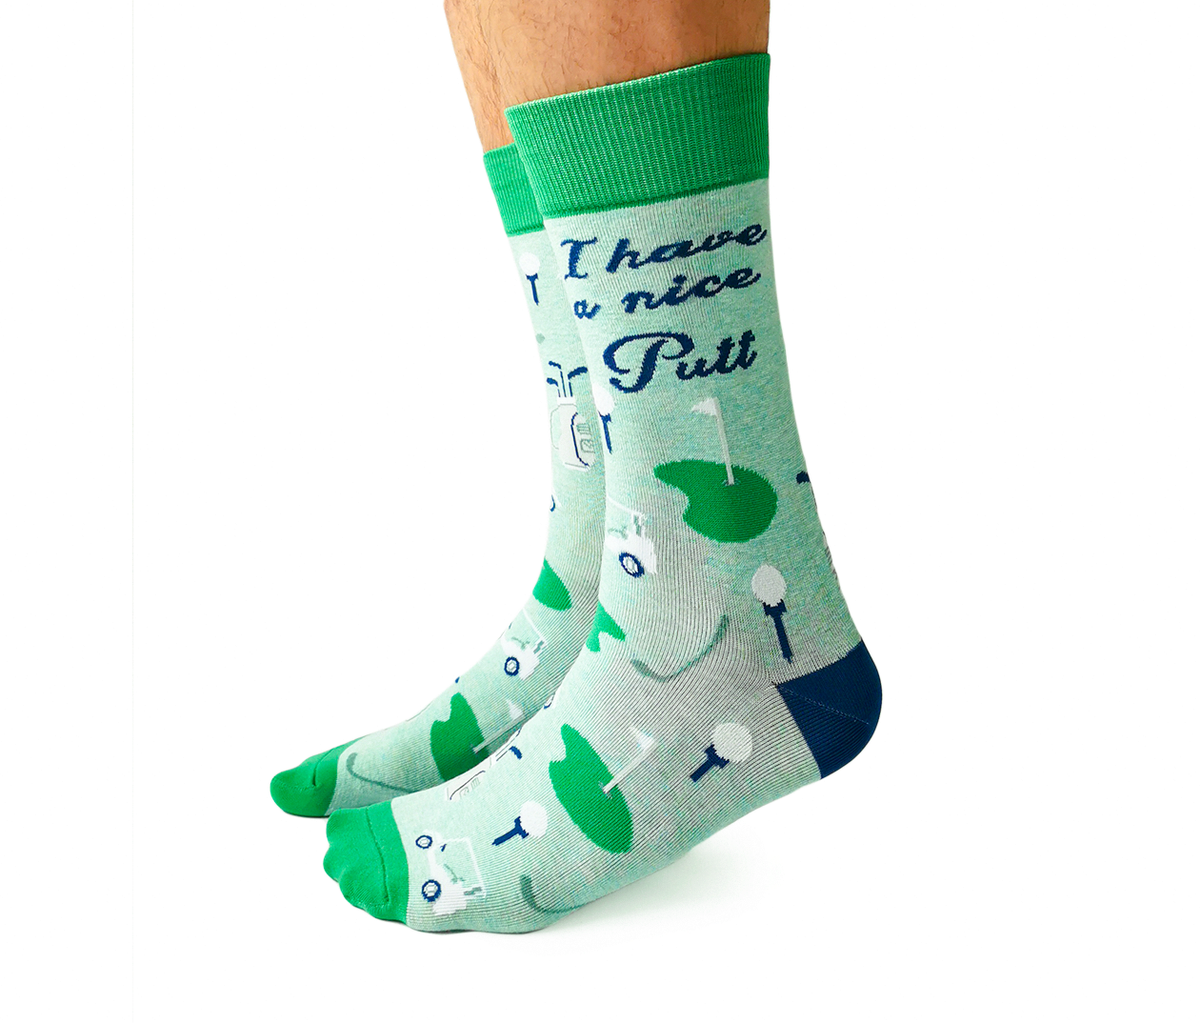 Hotsox Funny Socks for Men - I Like Big Putts